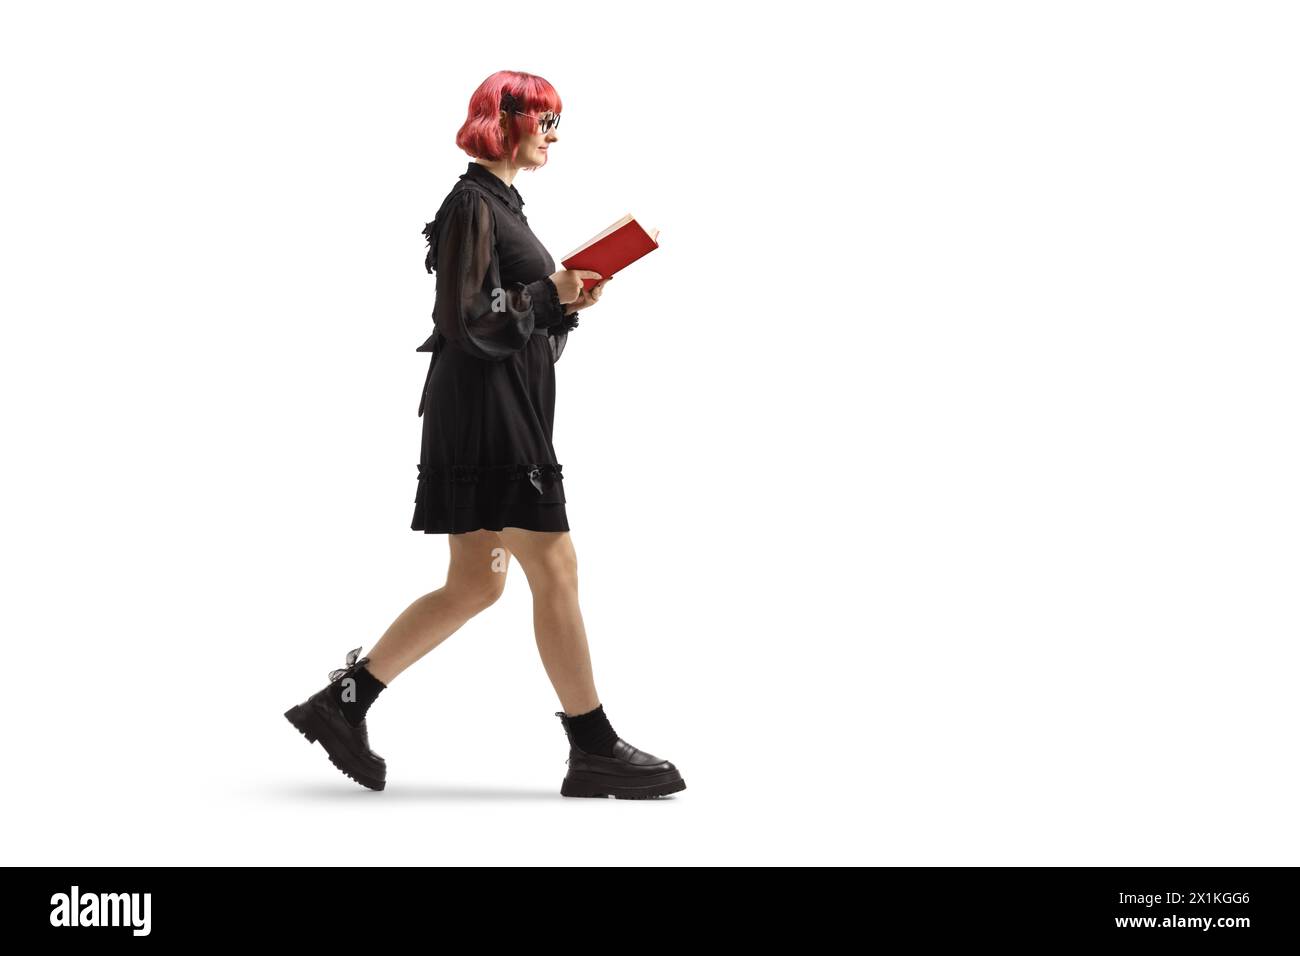 Plan de profil complet d'une jeune femme aux cheveux roux dans une robe noire marchant et lisant un livre isolé sur fond blanc Banque D'Images